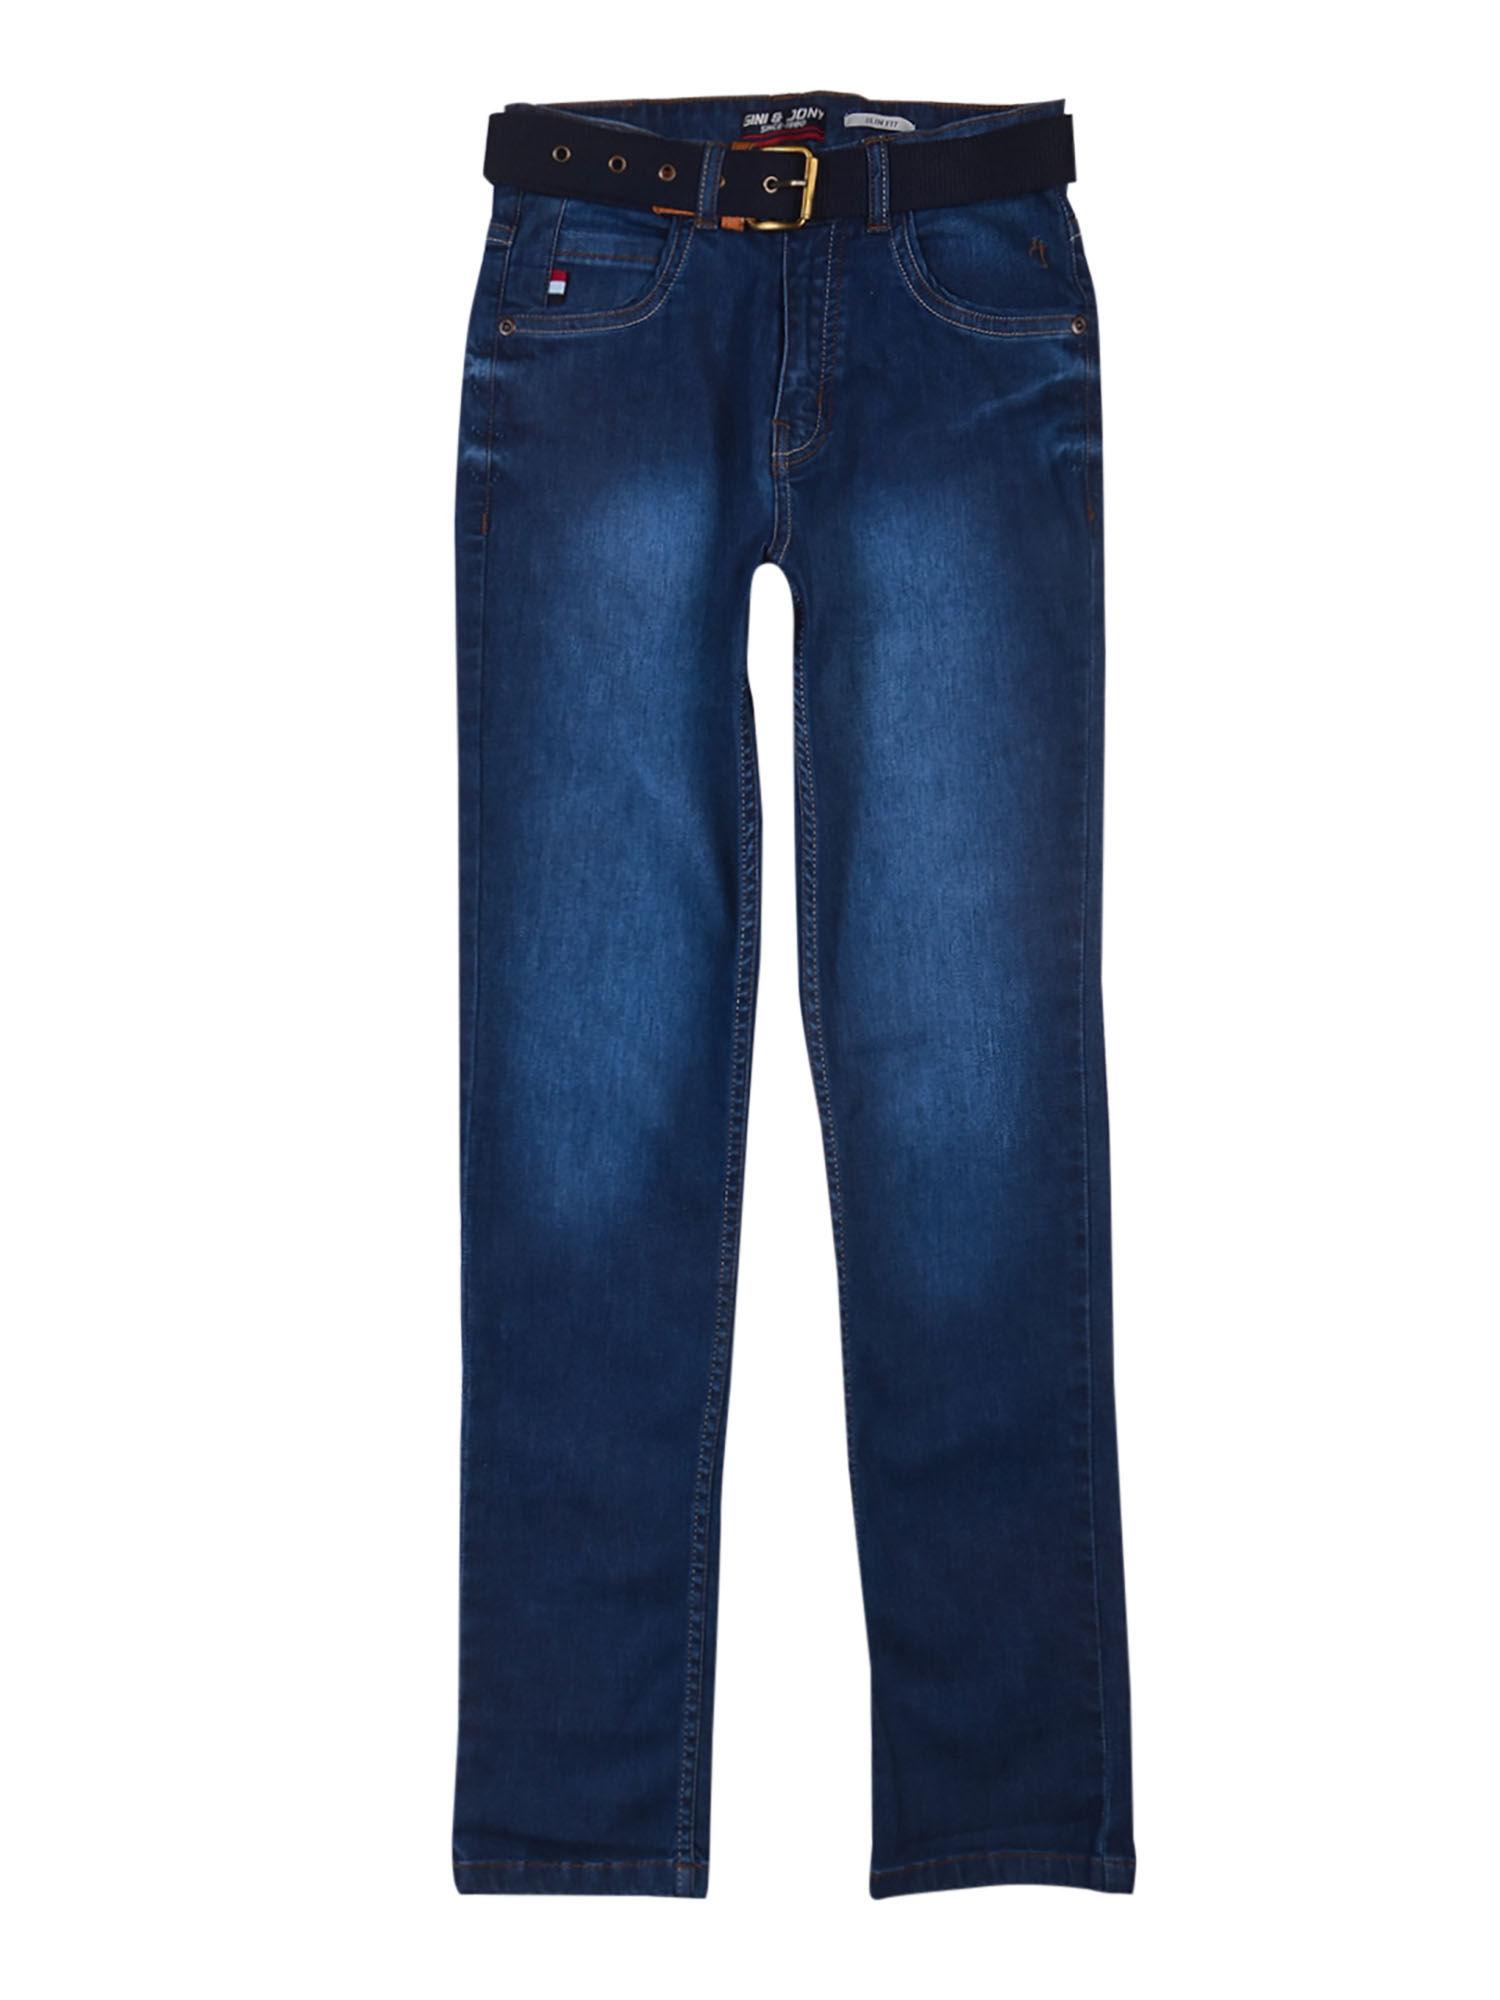 blue solid/plain jeans